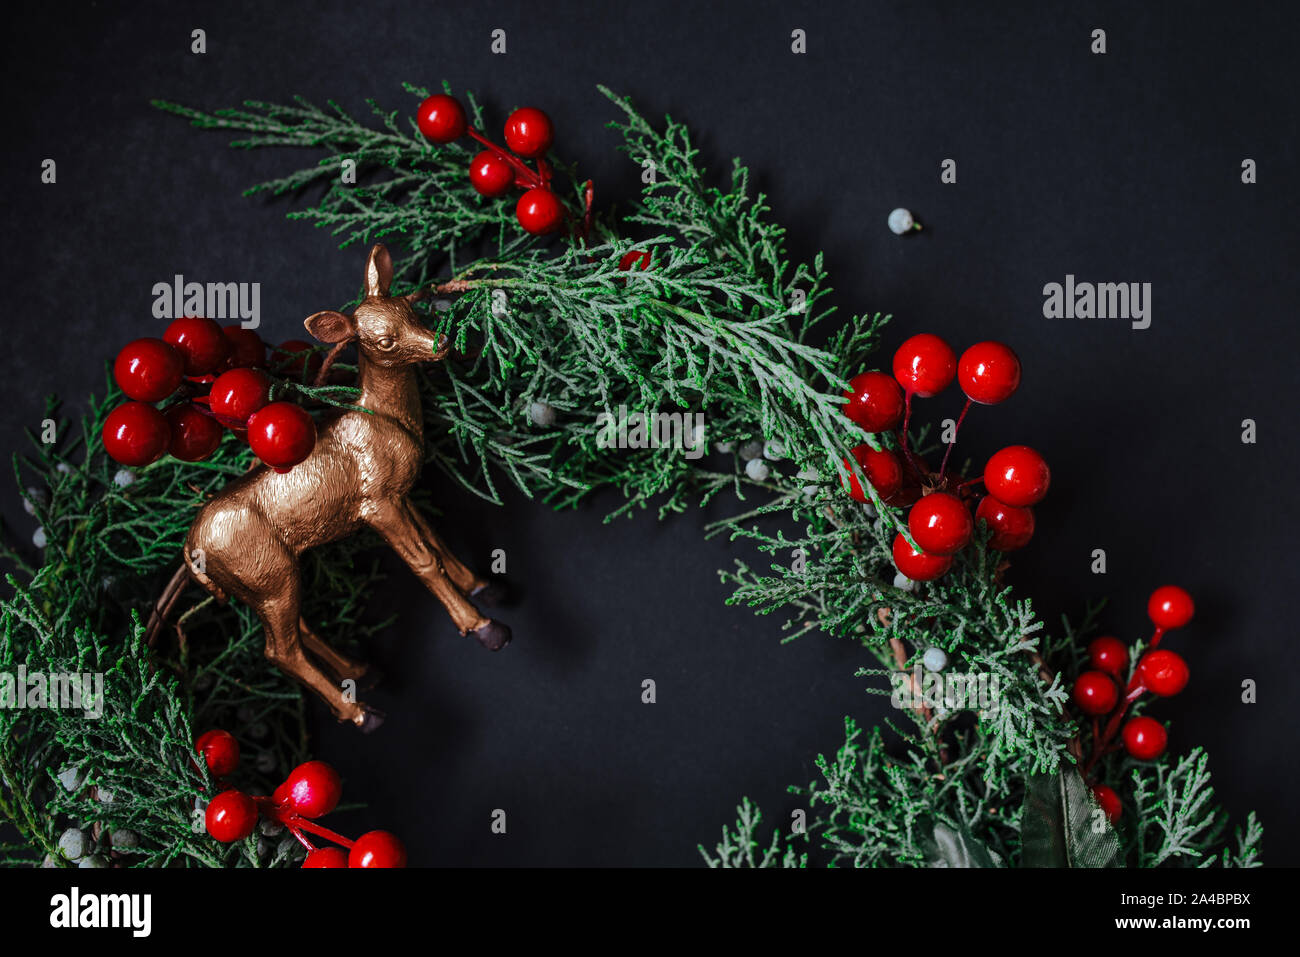 Weihnachten Kranz Detail der immergrünen, roten Beeren und gold Rentier auf dunklem Hintergrund. Nandian Netzwerk grüner Zweig und rustikalen Krone. Flach. Stockfoto